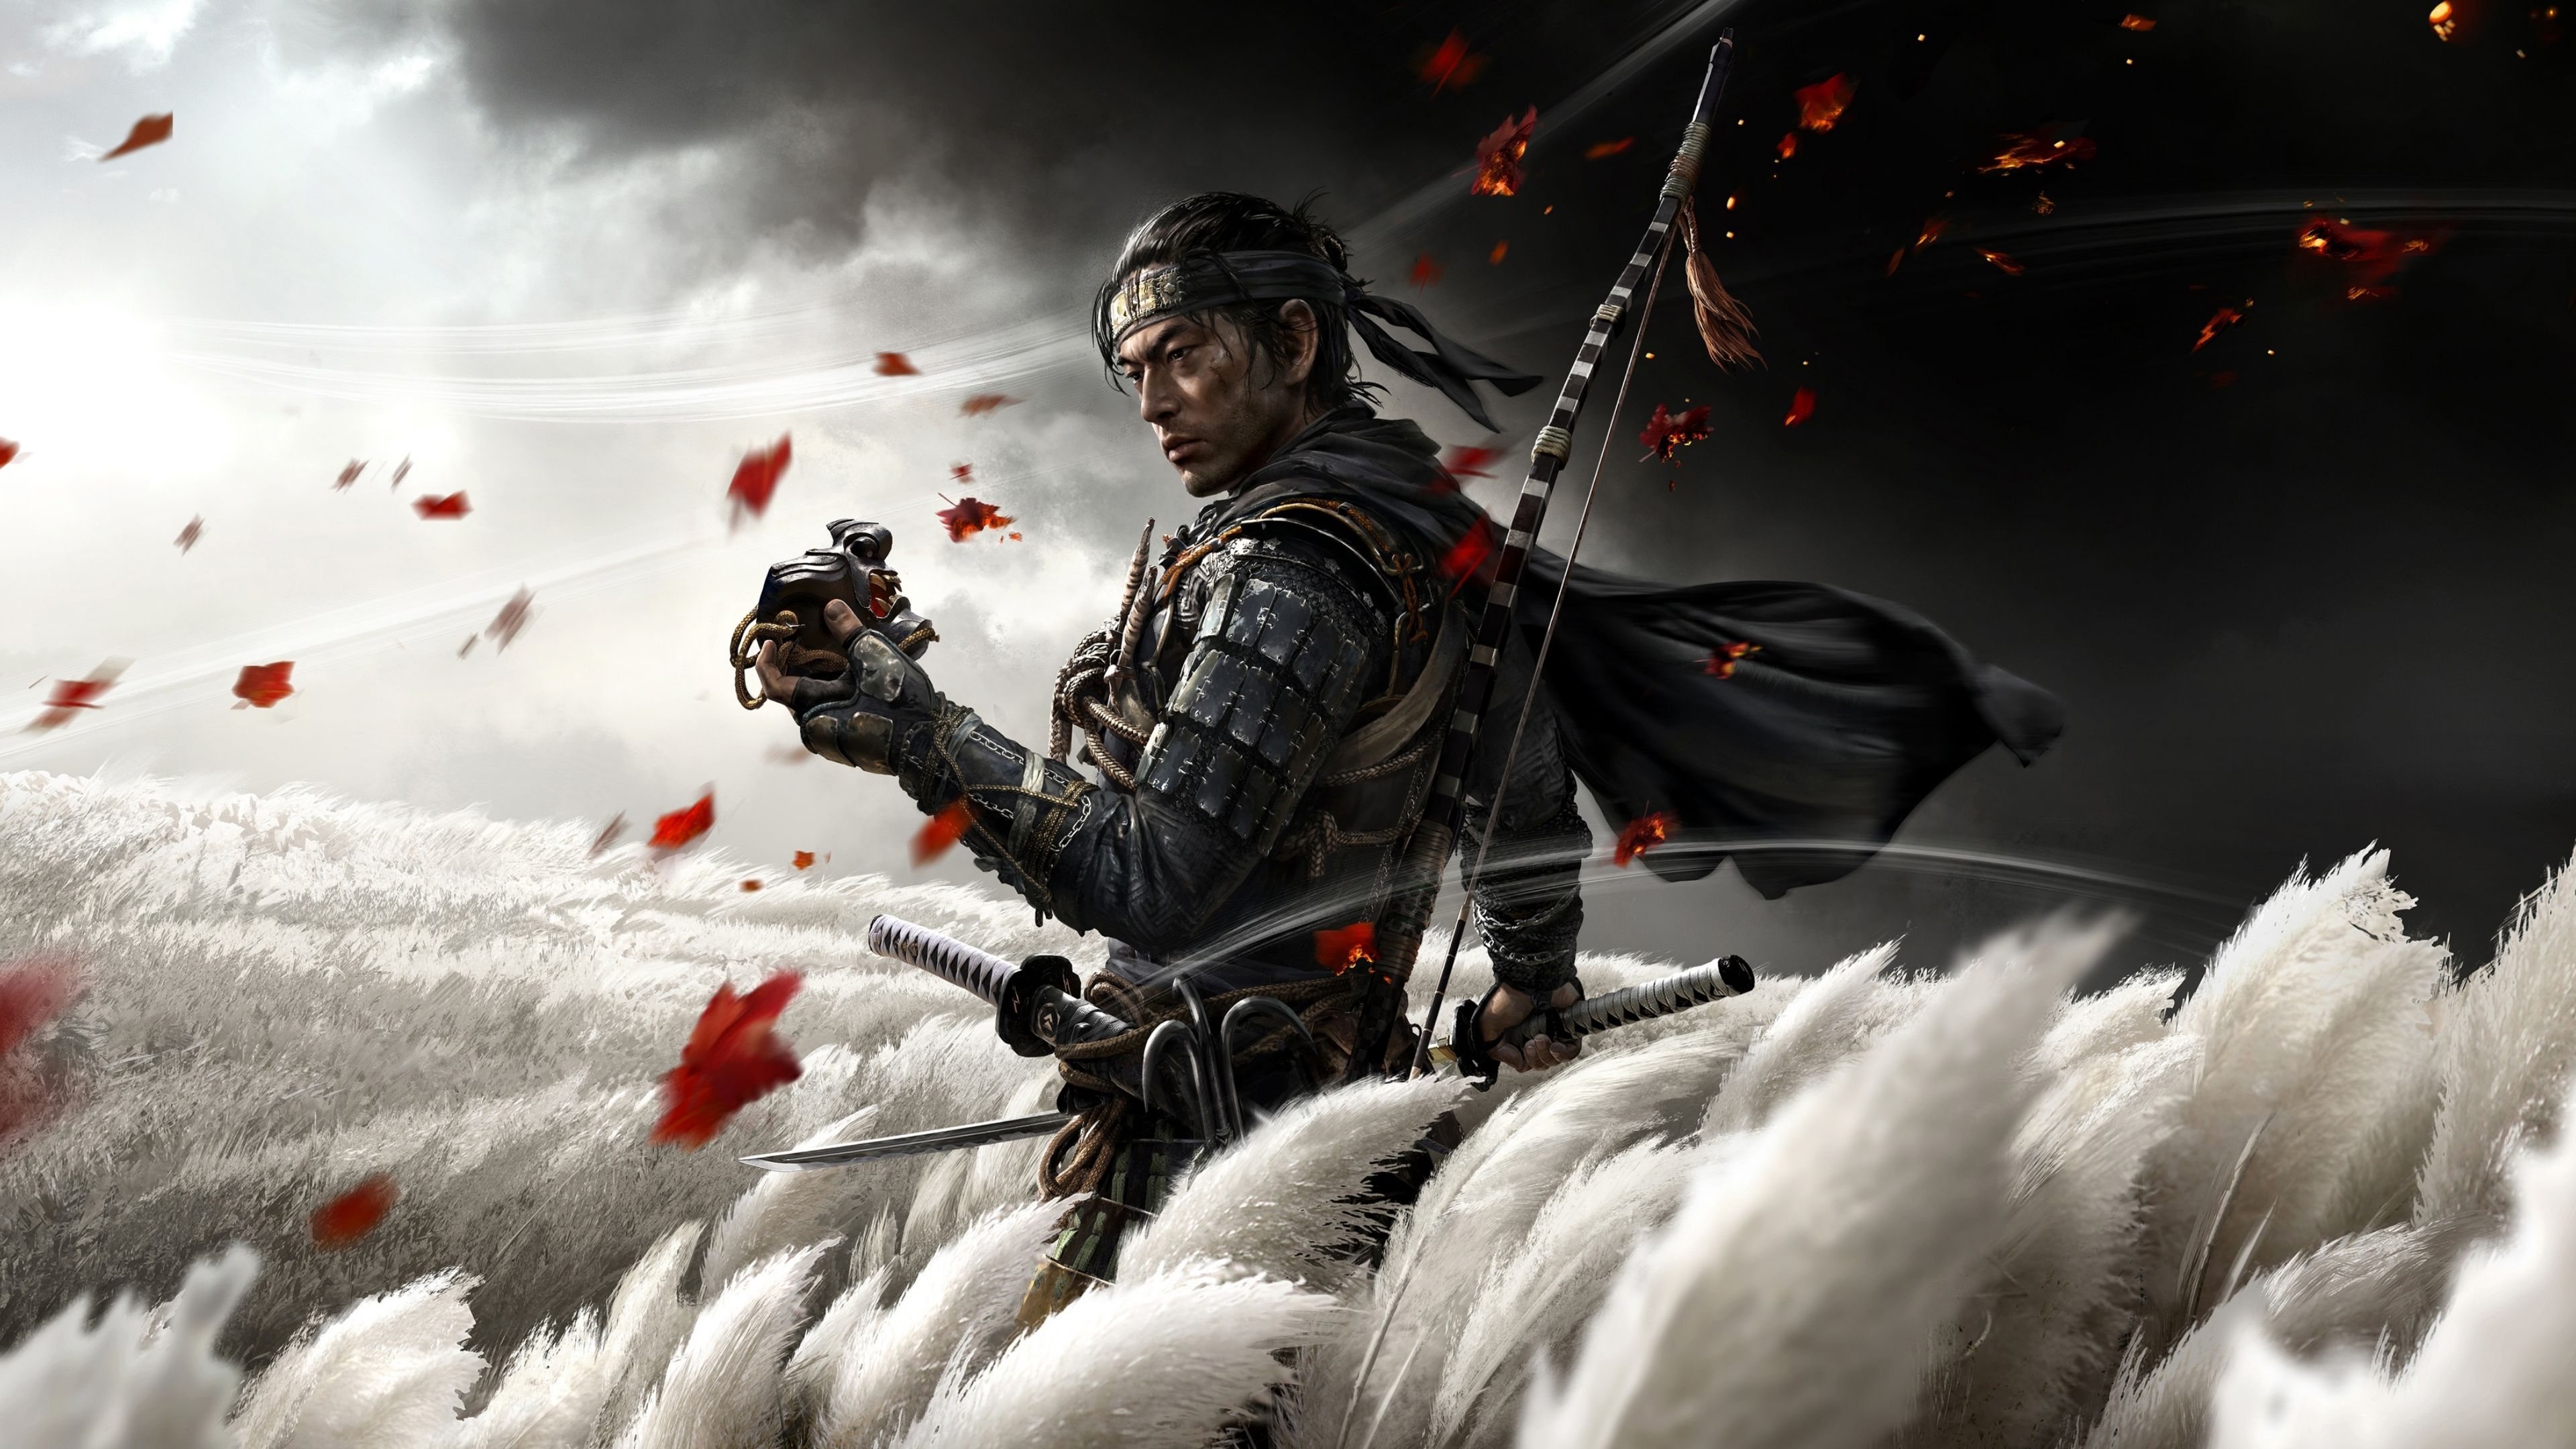 Ninja Vs Samurai 4K wallpaper download